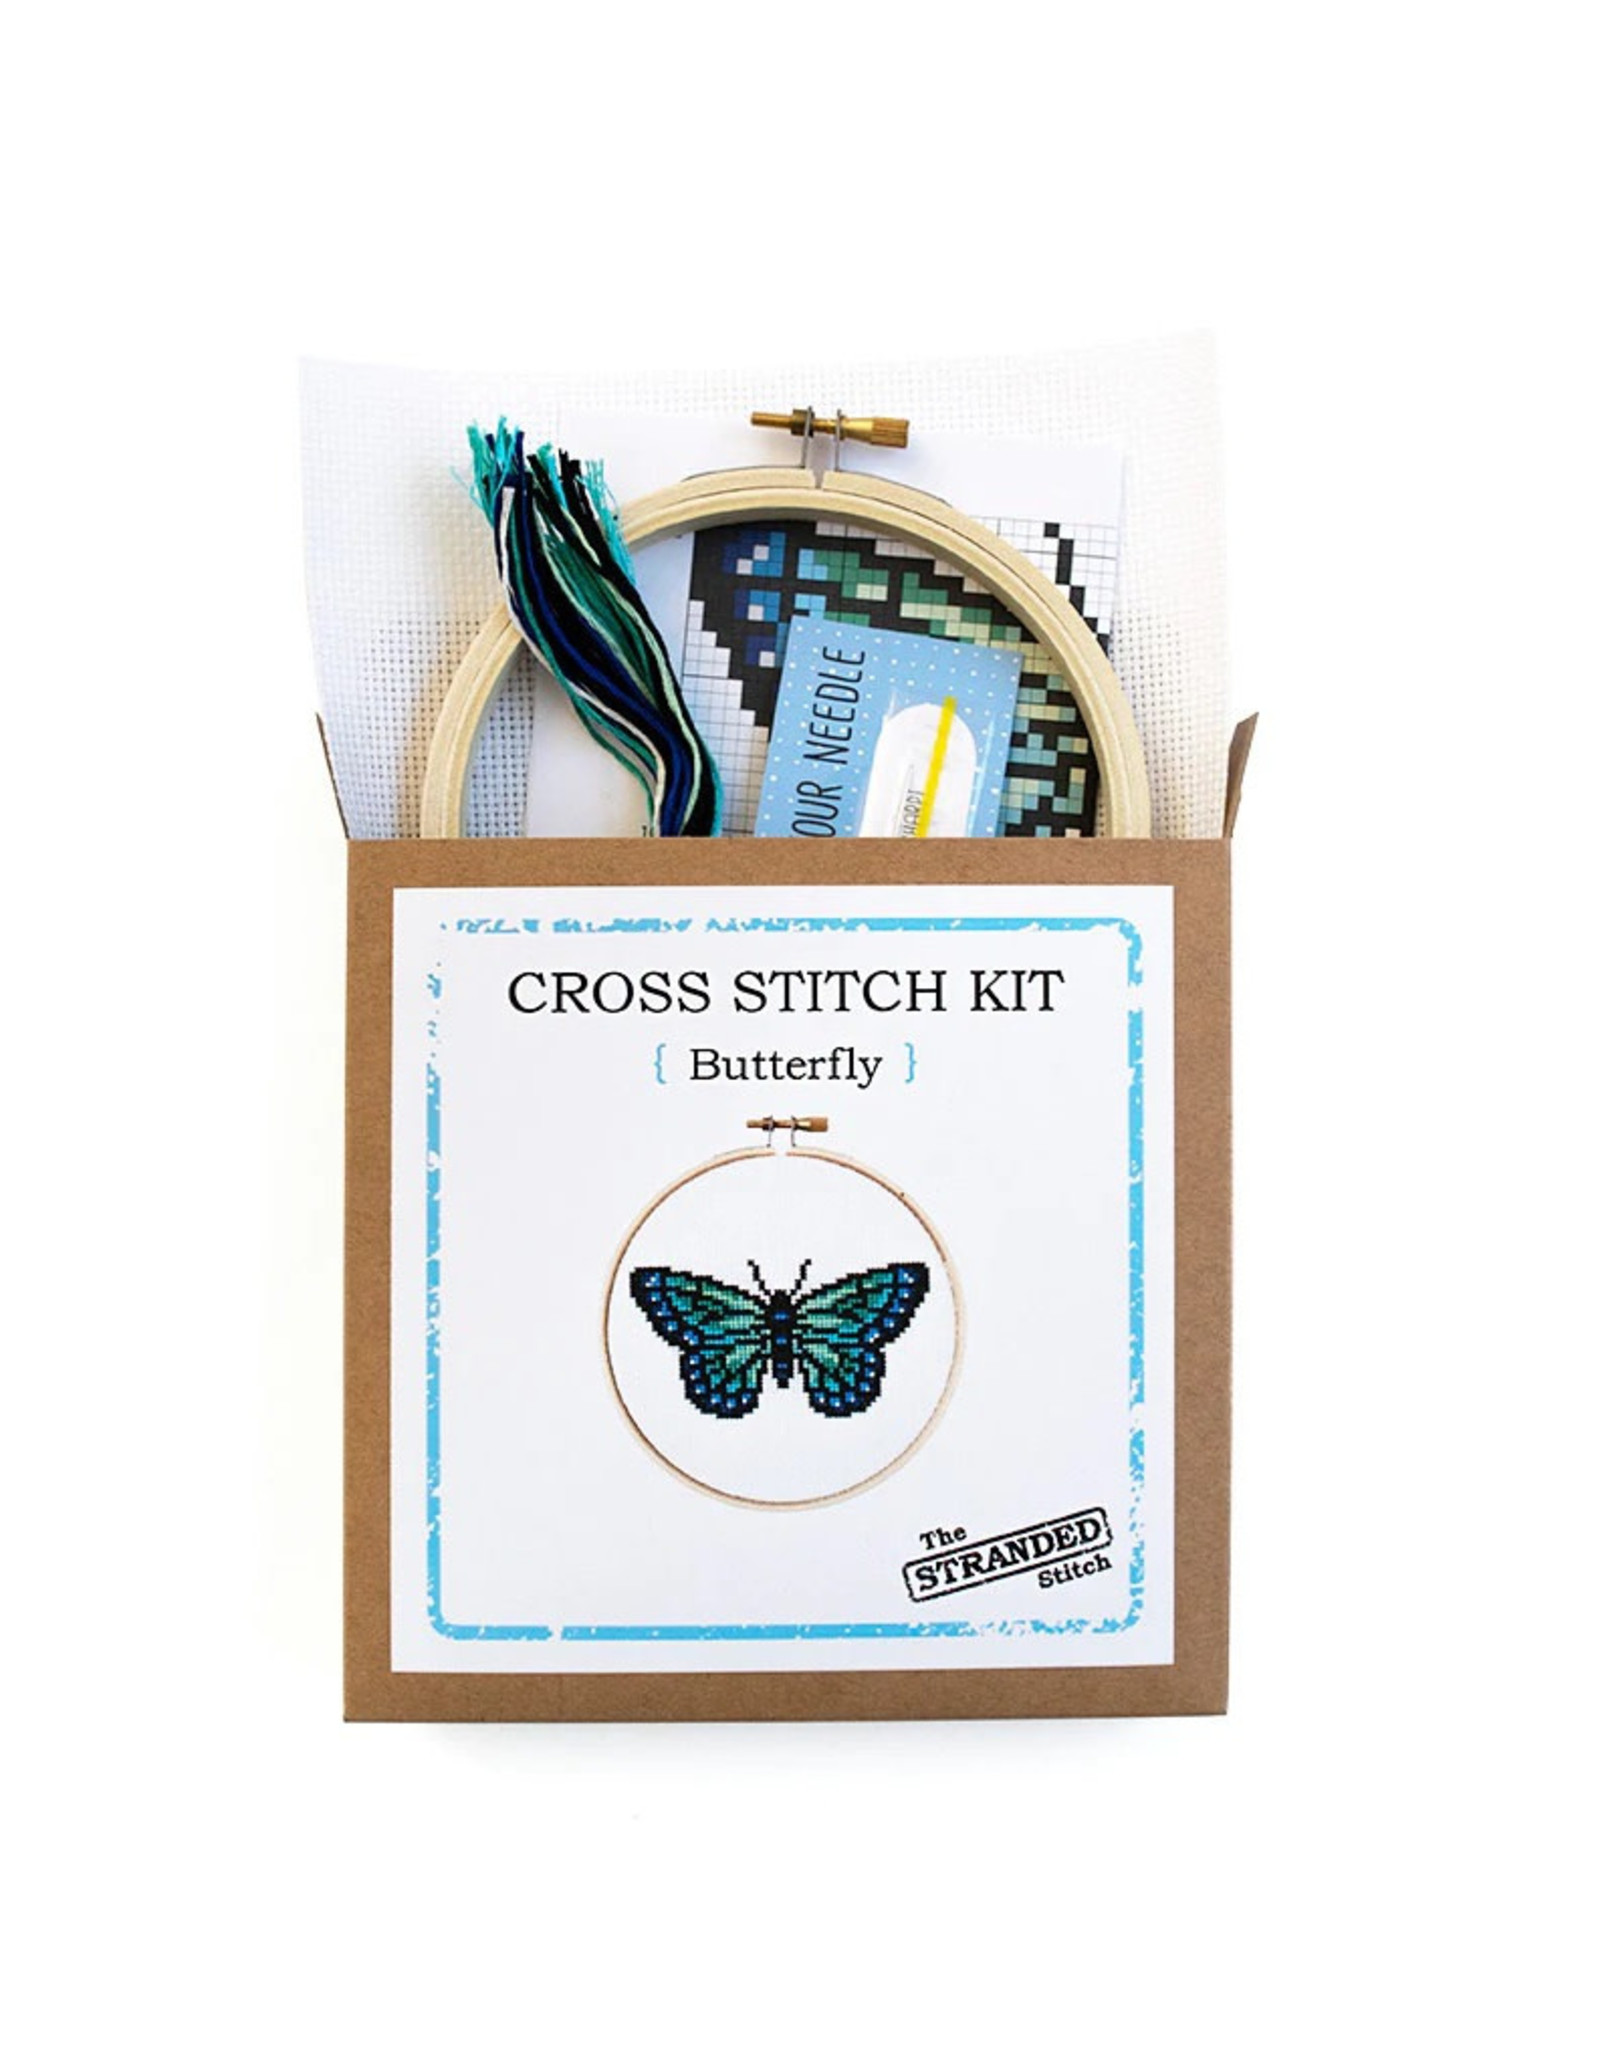 The Stranded Stitch Butterfly Cross Stitch Kit